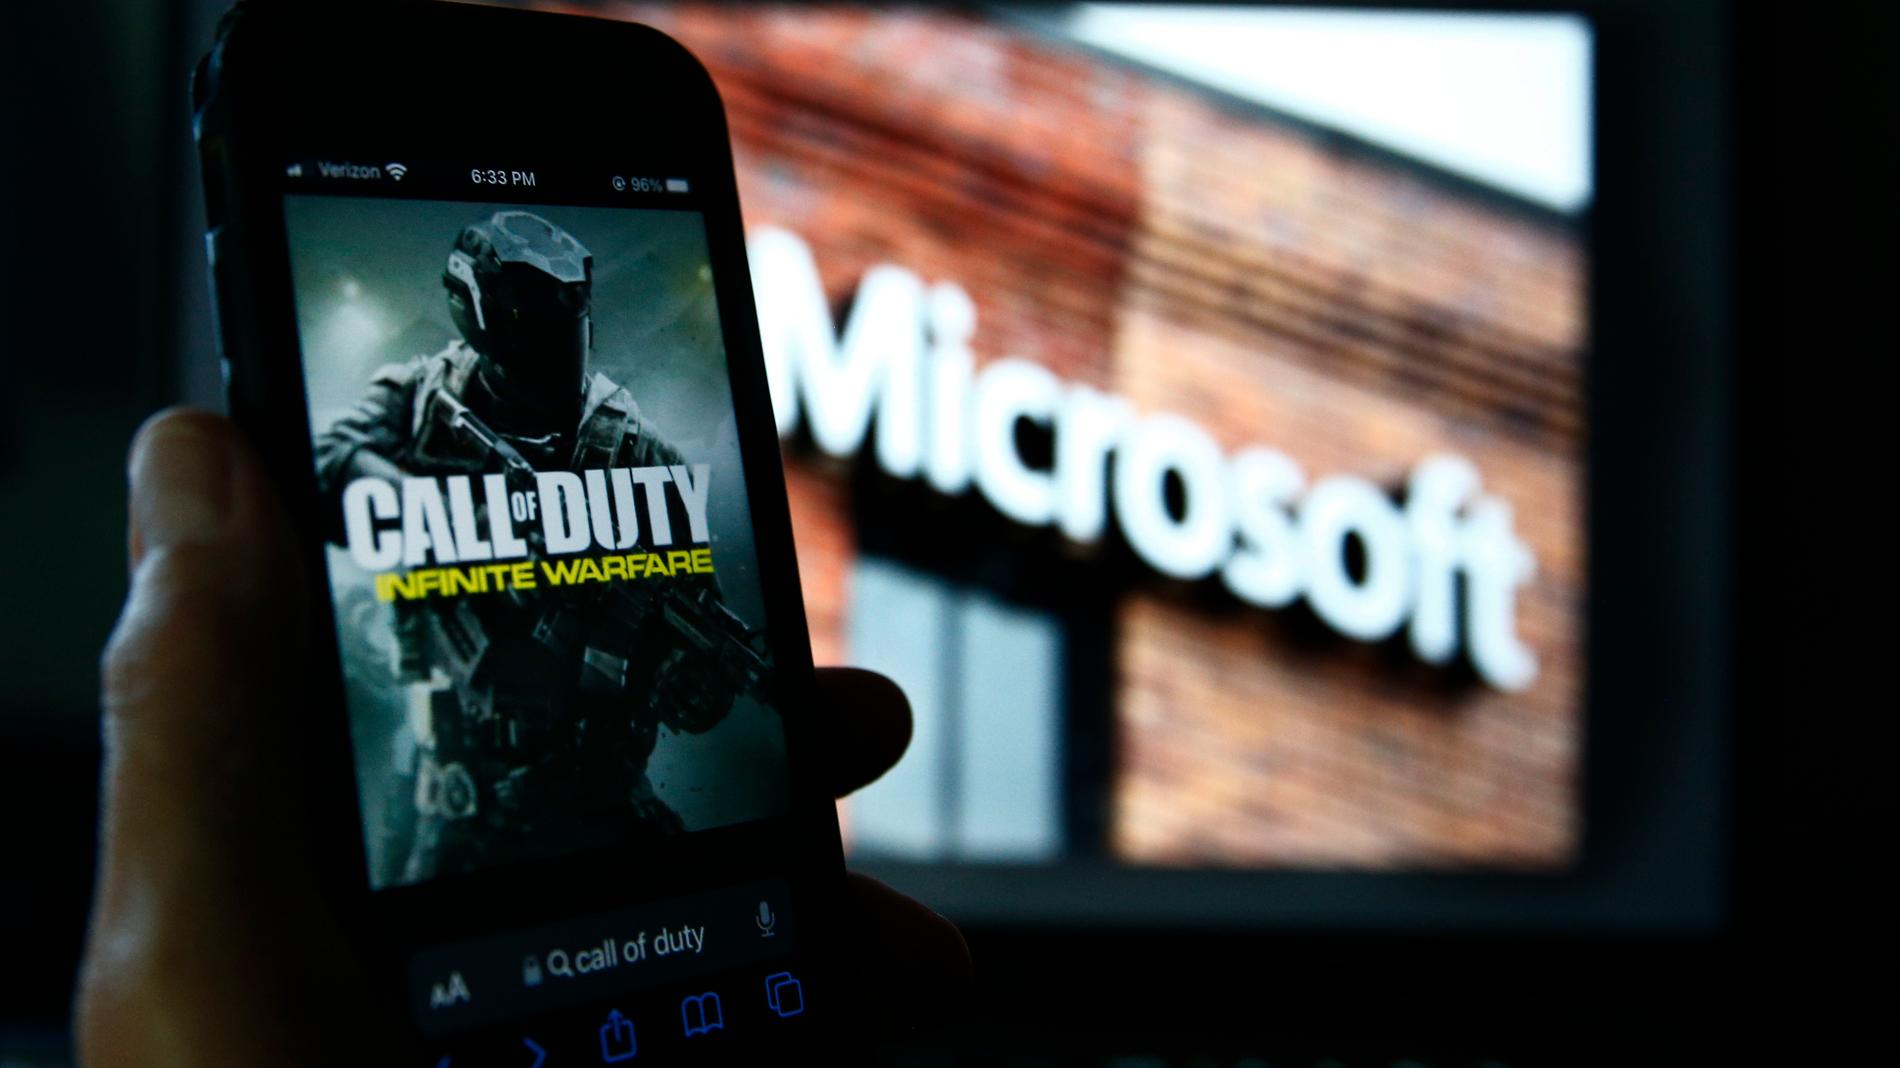 Enligt ett "bindande avtal" ska spelet "Call of duty" släppas på både Xbox och Sony Playstation även i fortsättningen. Arkivbild.